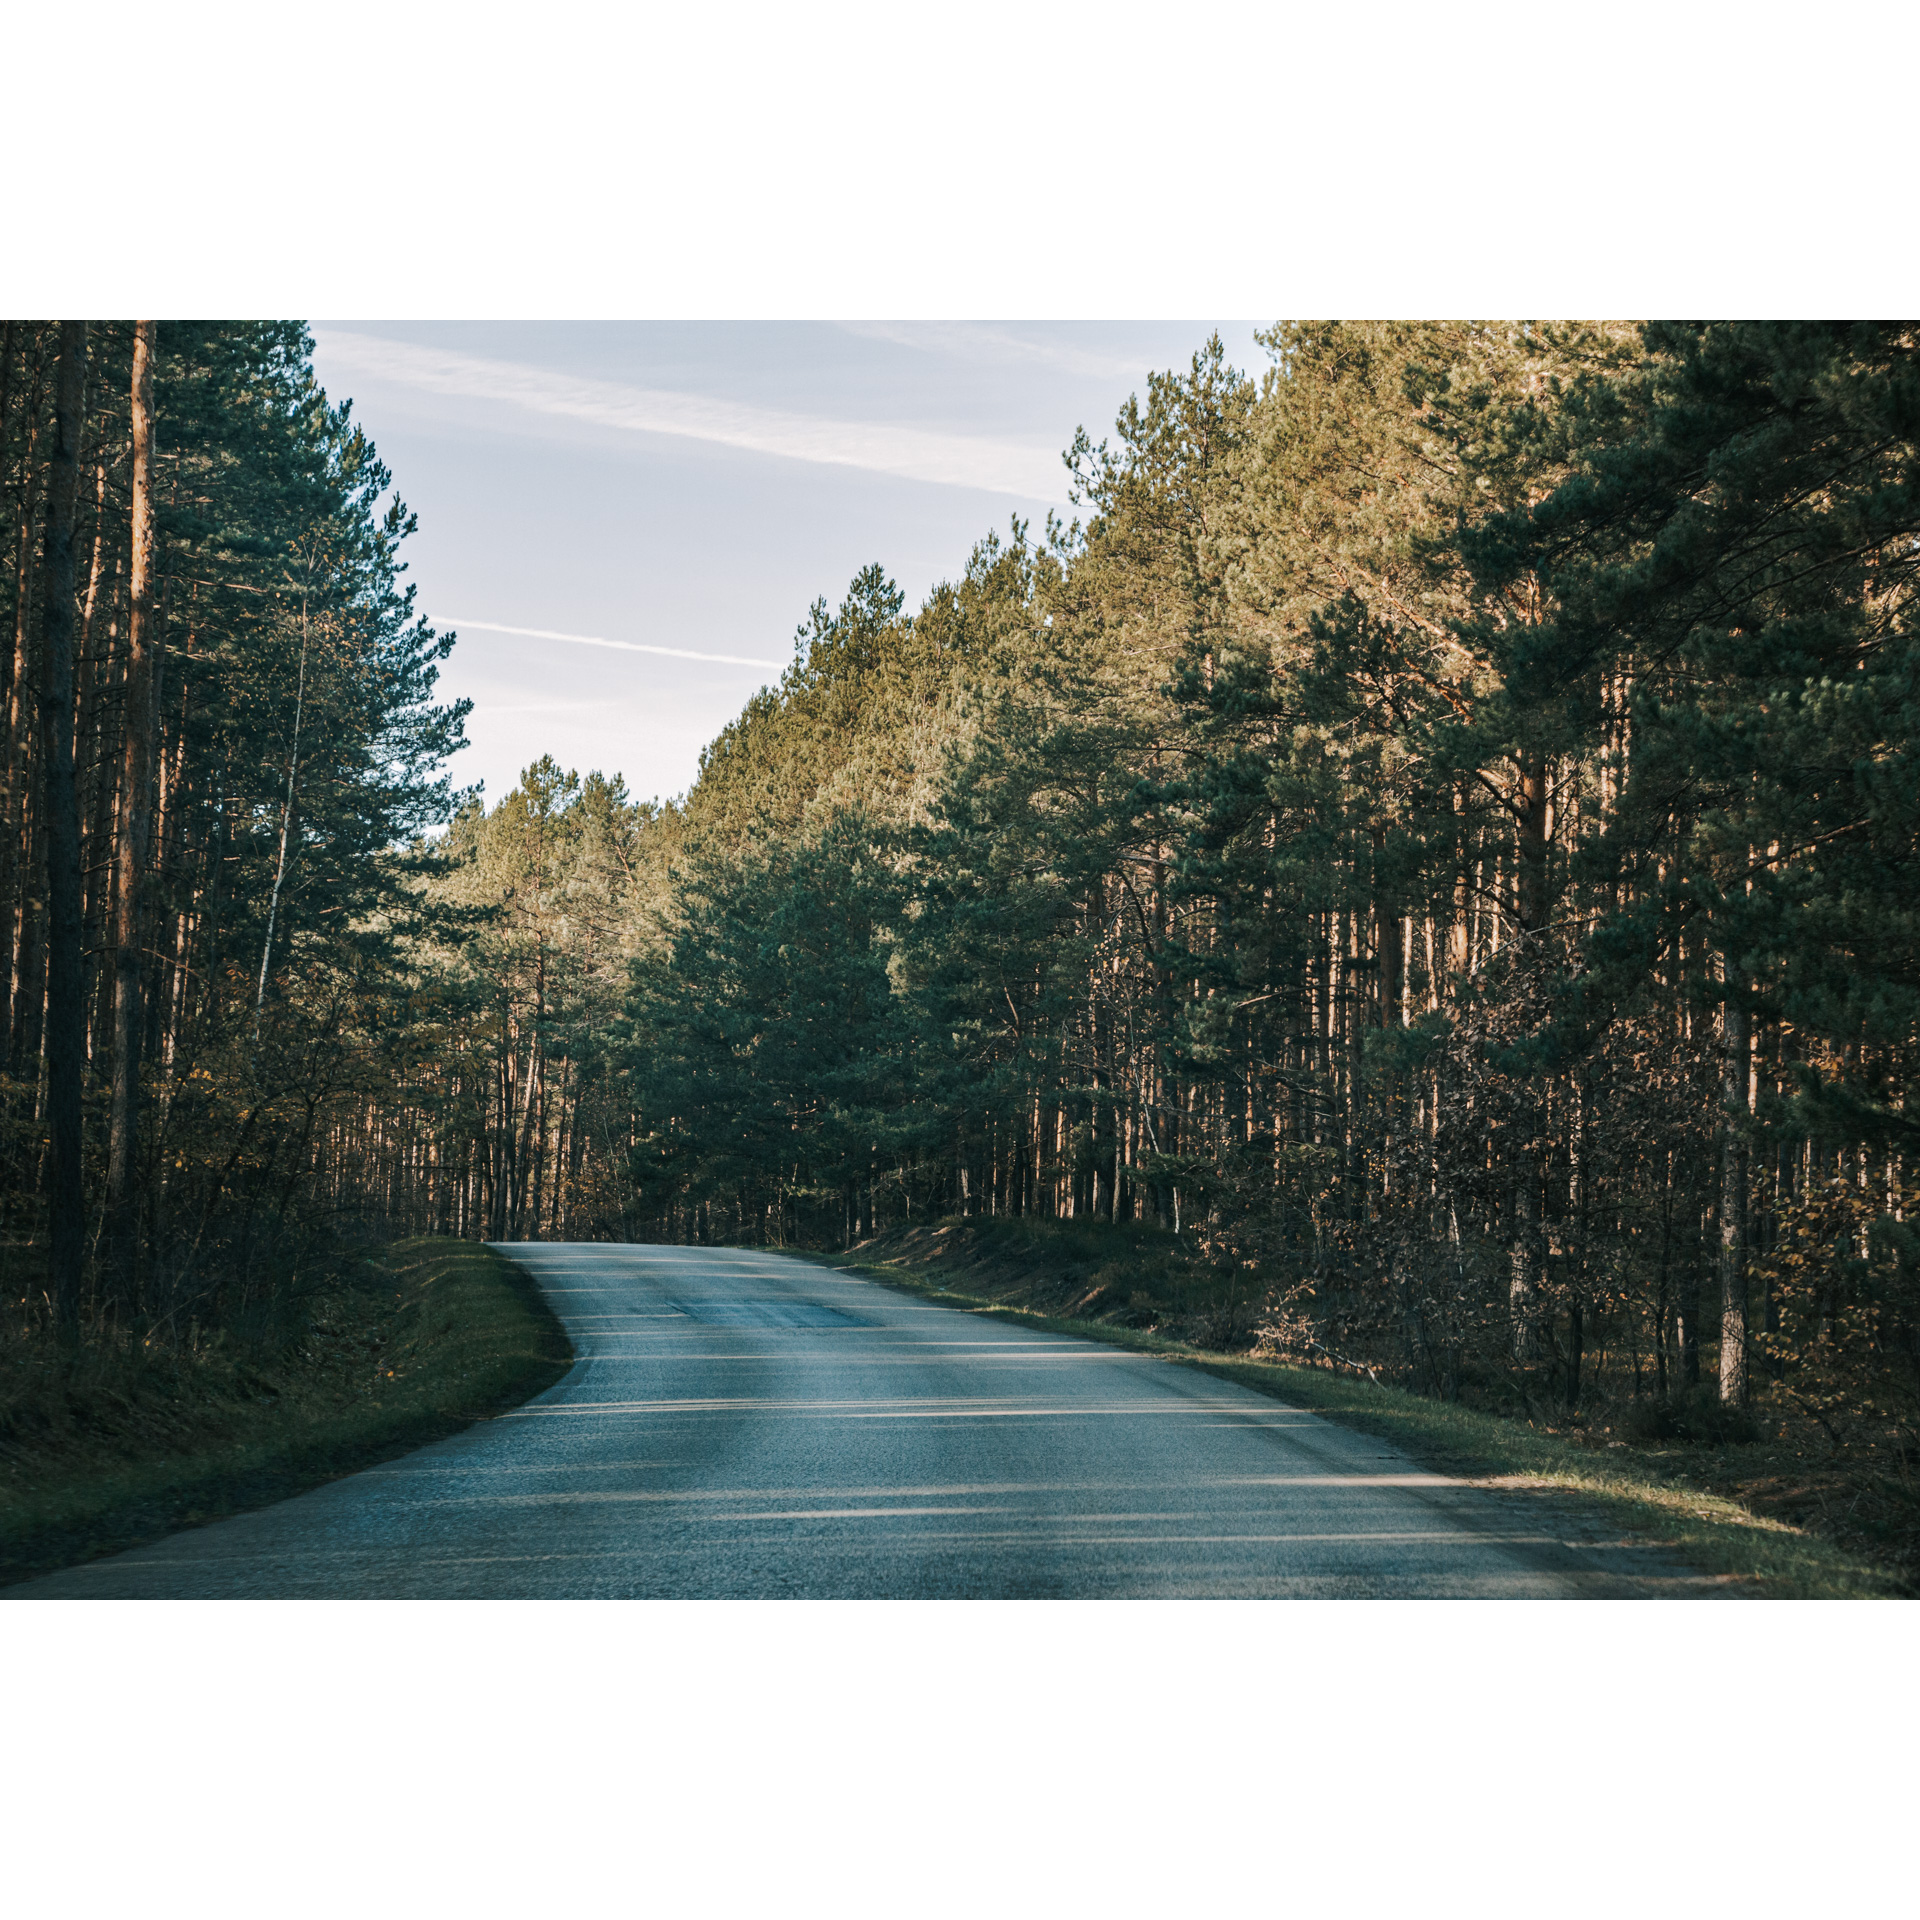 Leśna asfaltowa droga skręcająca w lewo wśród wysokich drzew iglastych